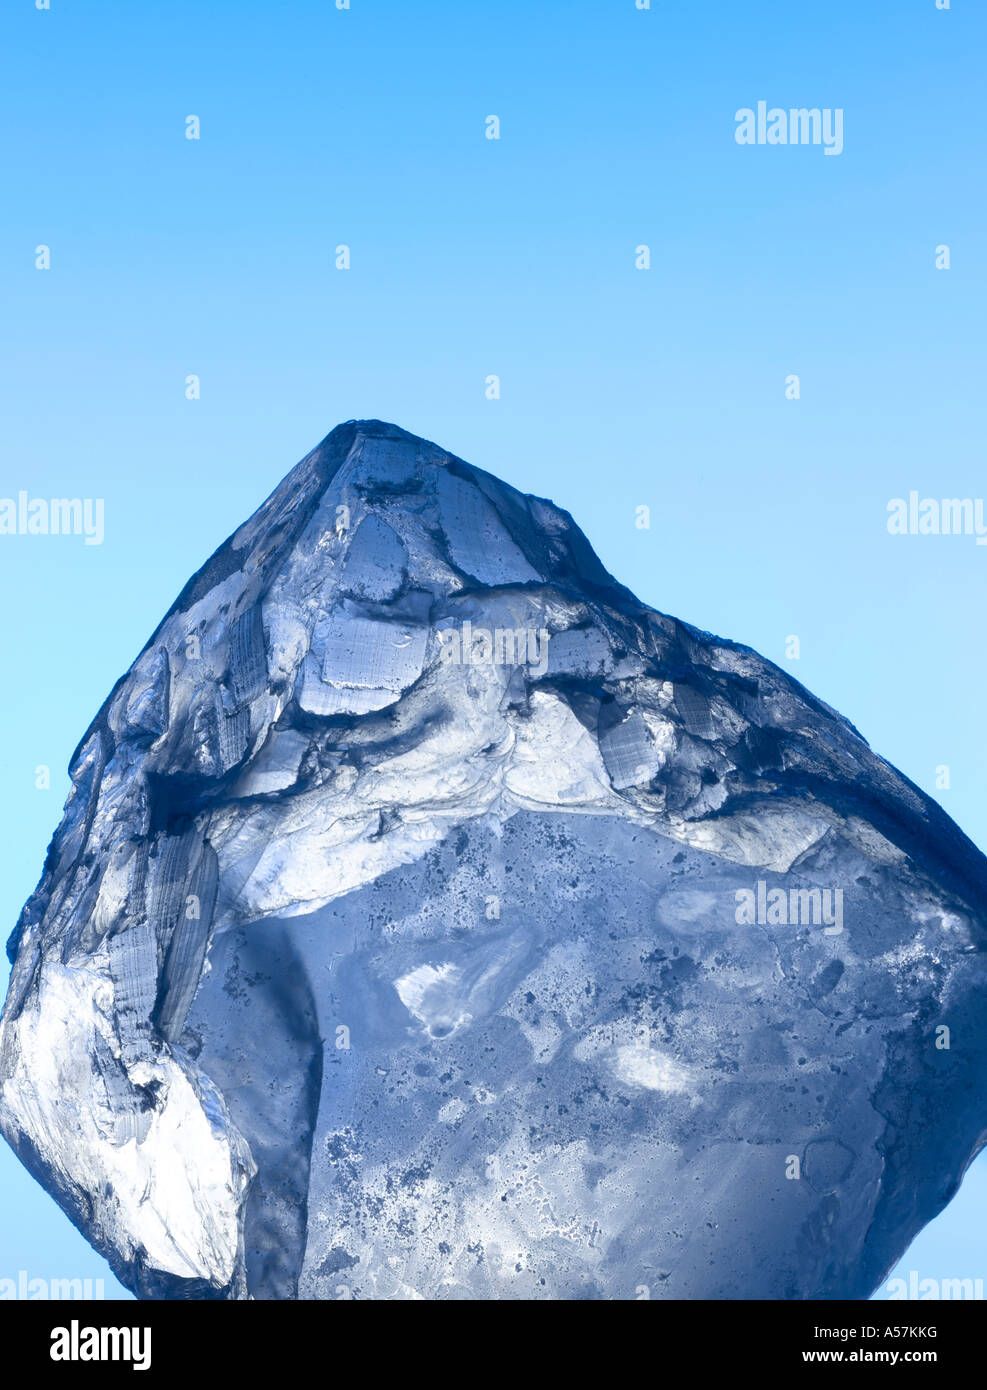 Un bloc de glace / cube sur un fond de ciel bleu Banque D'Images